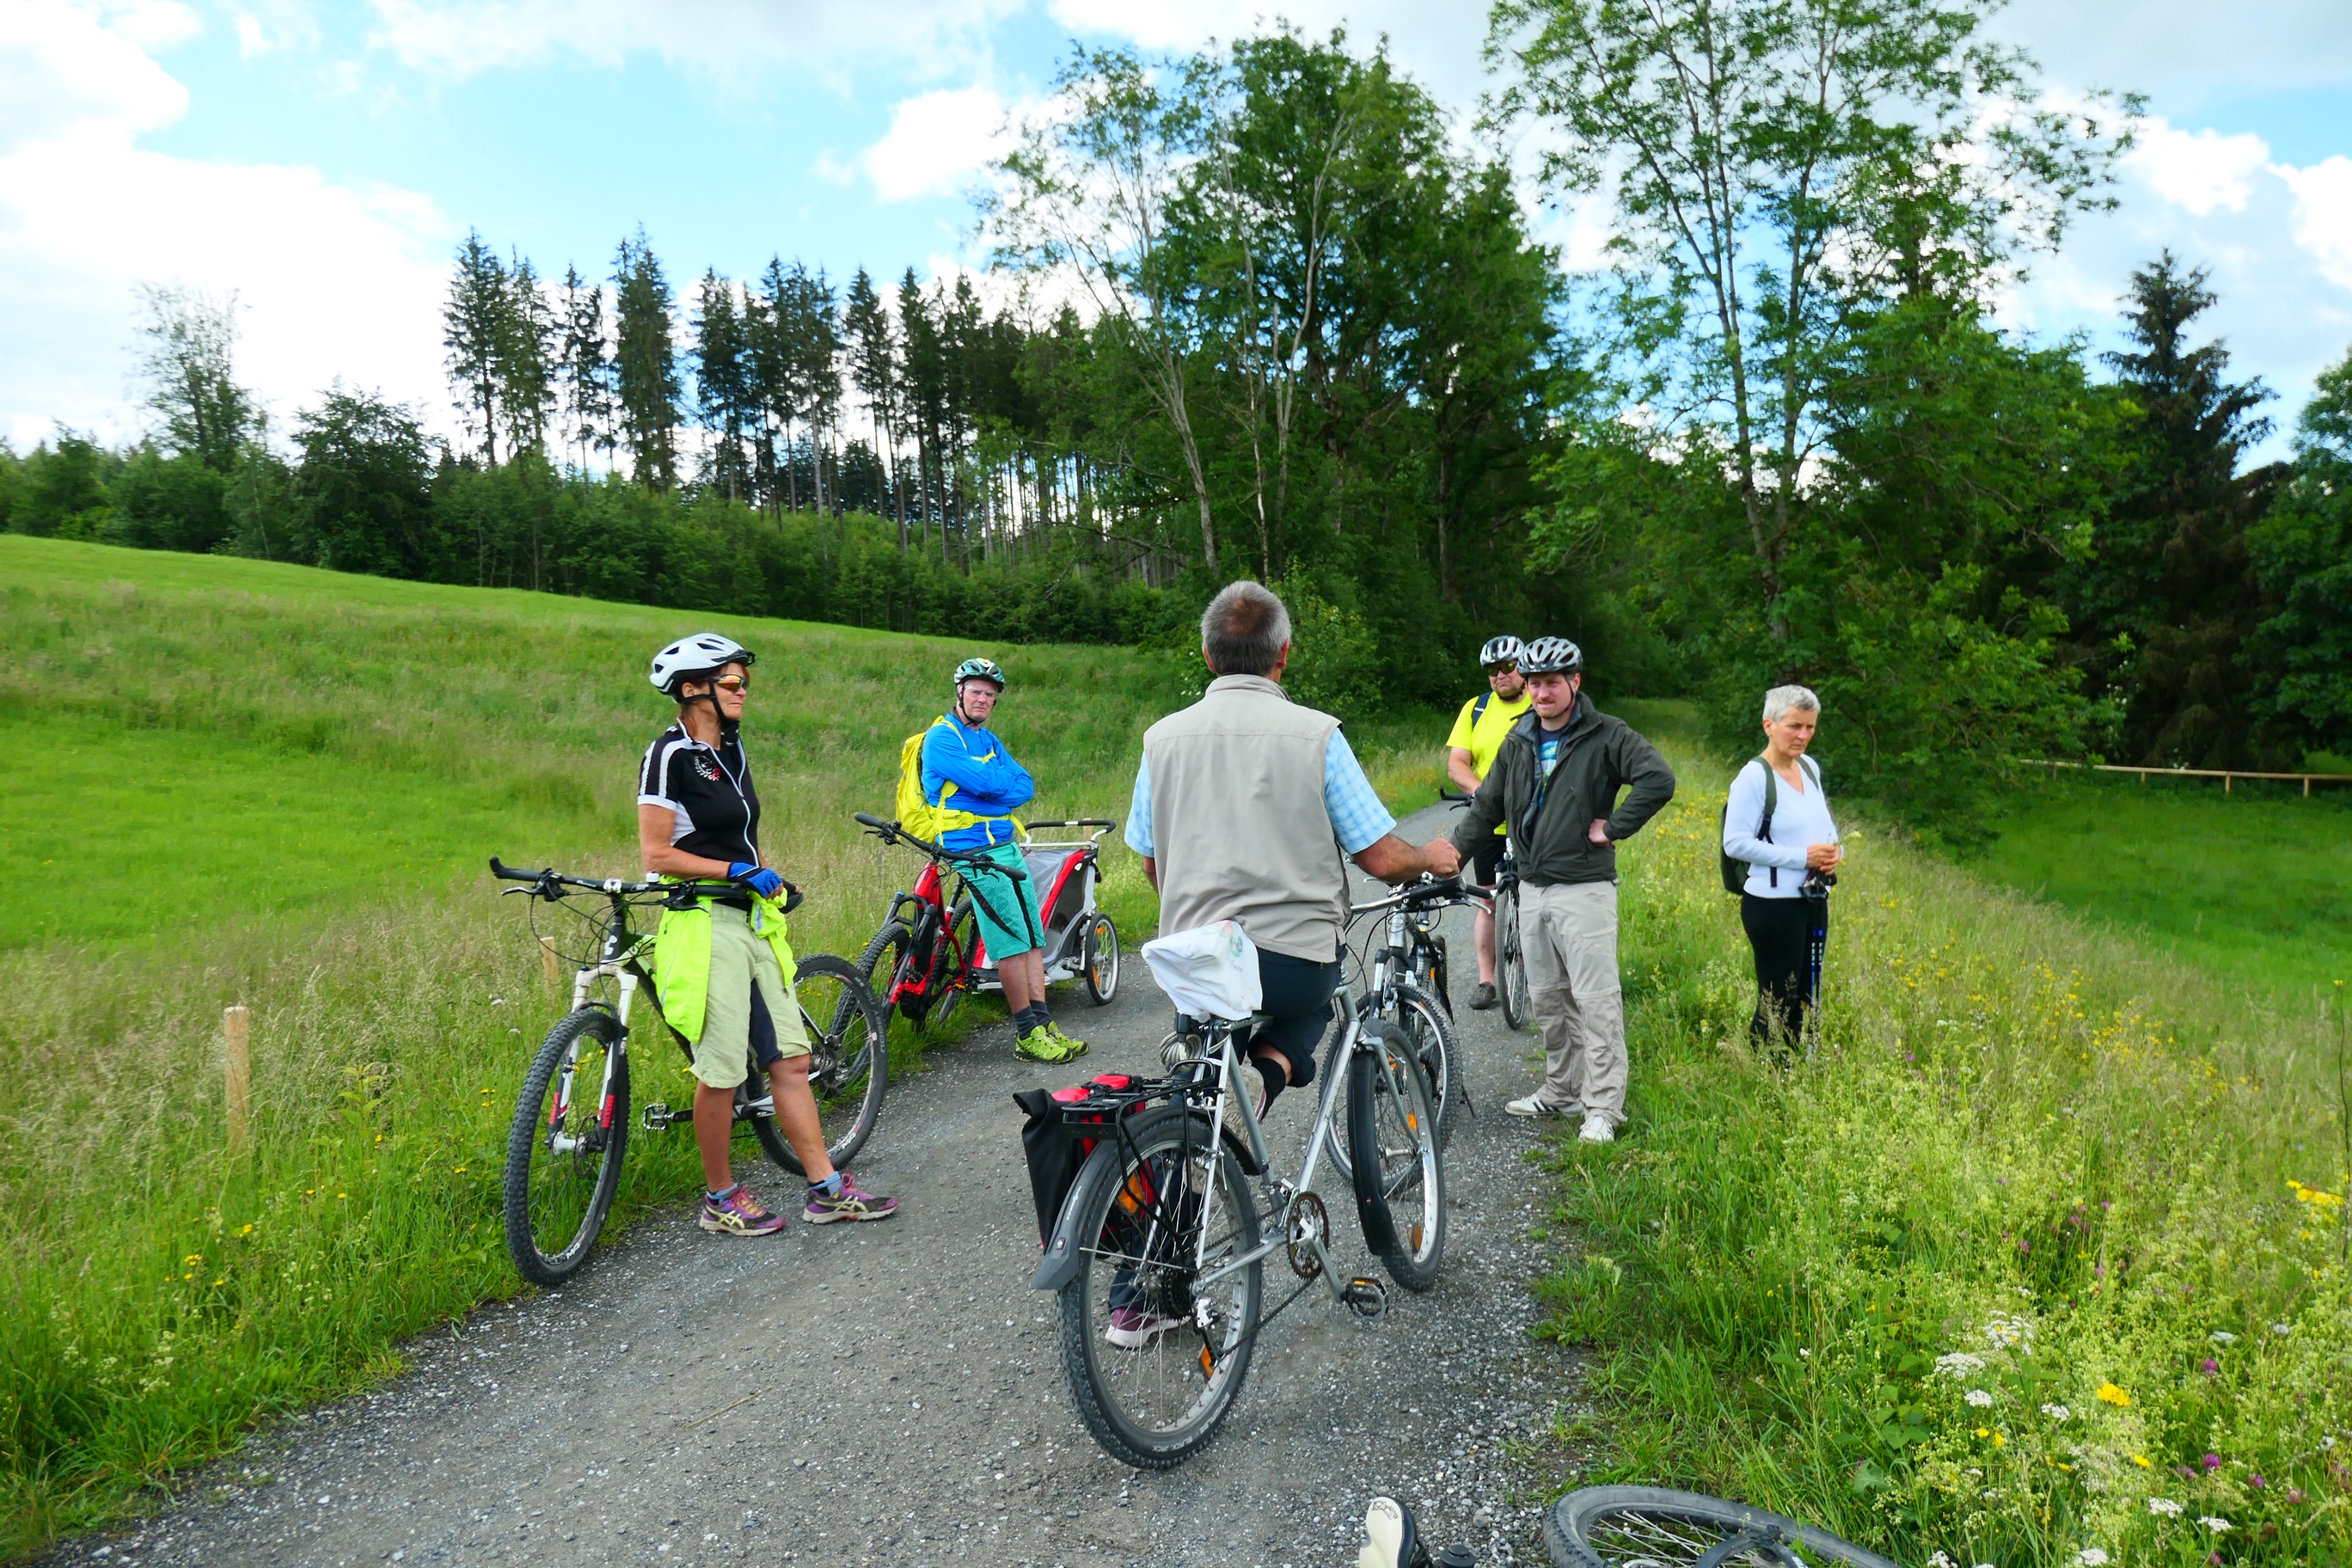 Naturkundliche Besonderheiten zwischen Kempten und Weitnau - Landschaftspflegeverband auf Exkursion mit den Bürgermeistern